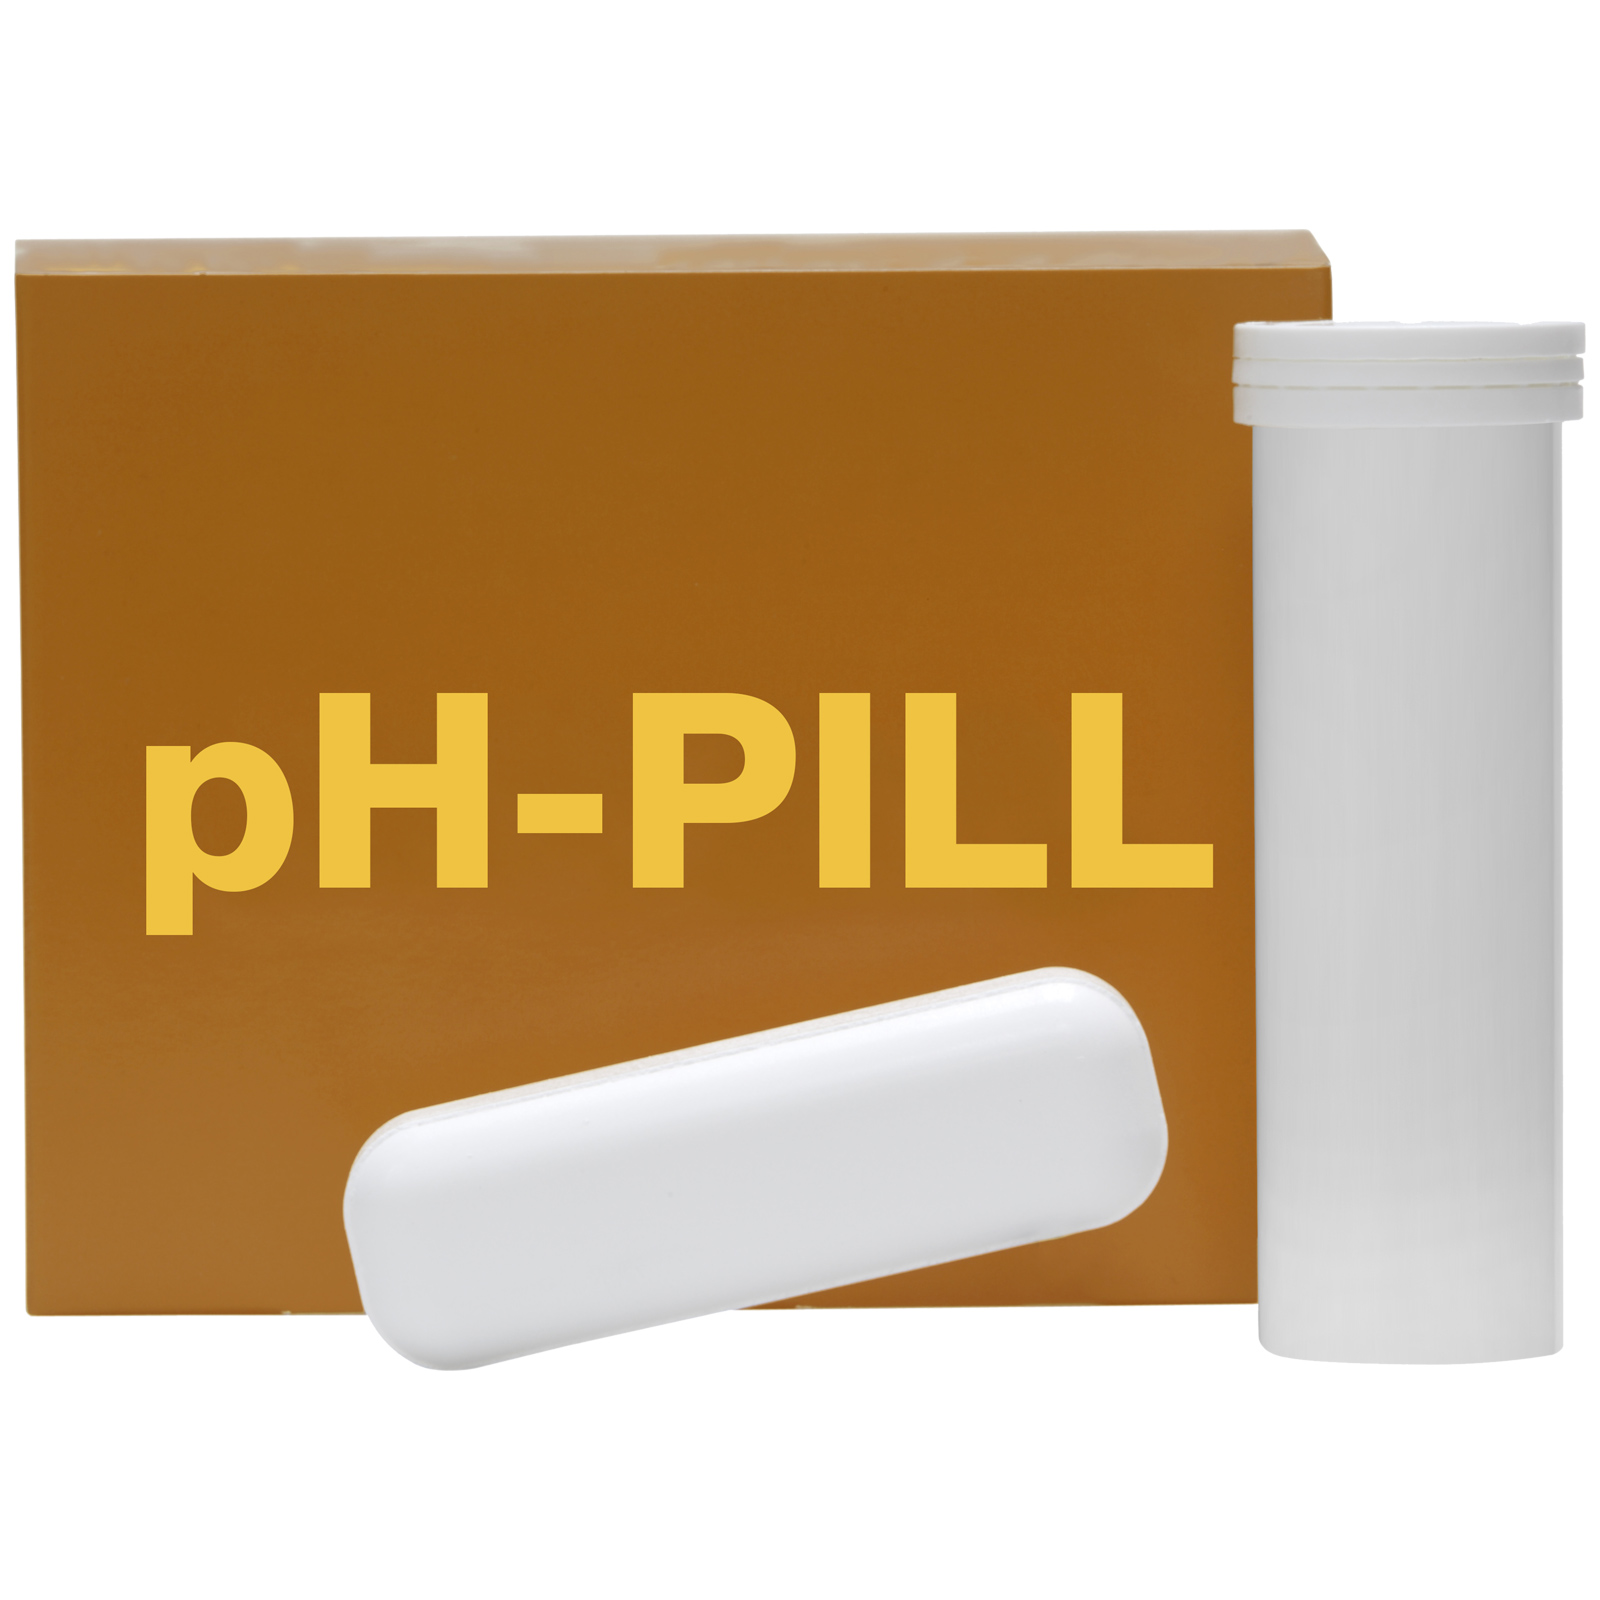 pH-PILL mot försurning av vommen 4 x 120 g